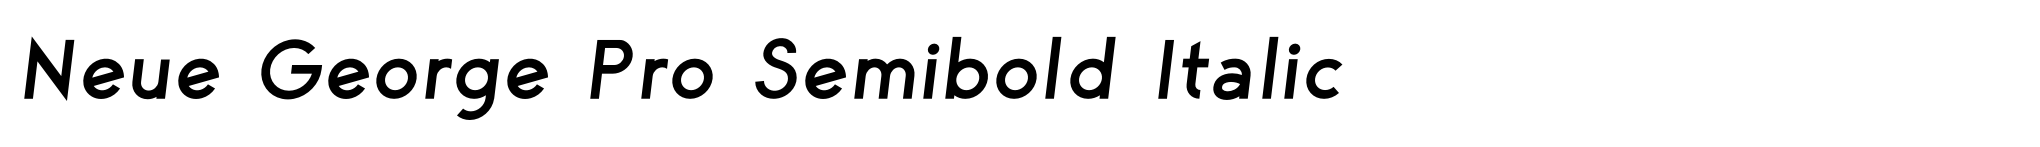 Neue George Pro Semibold Italic image